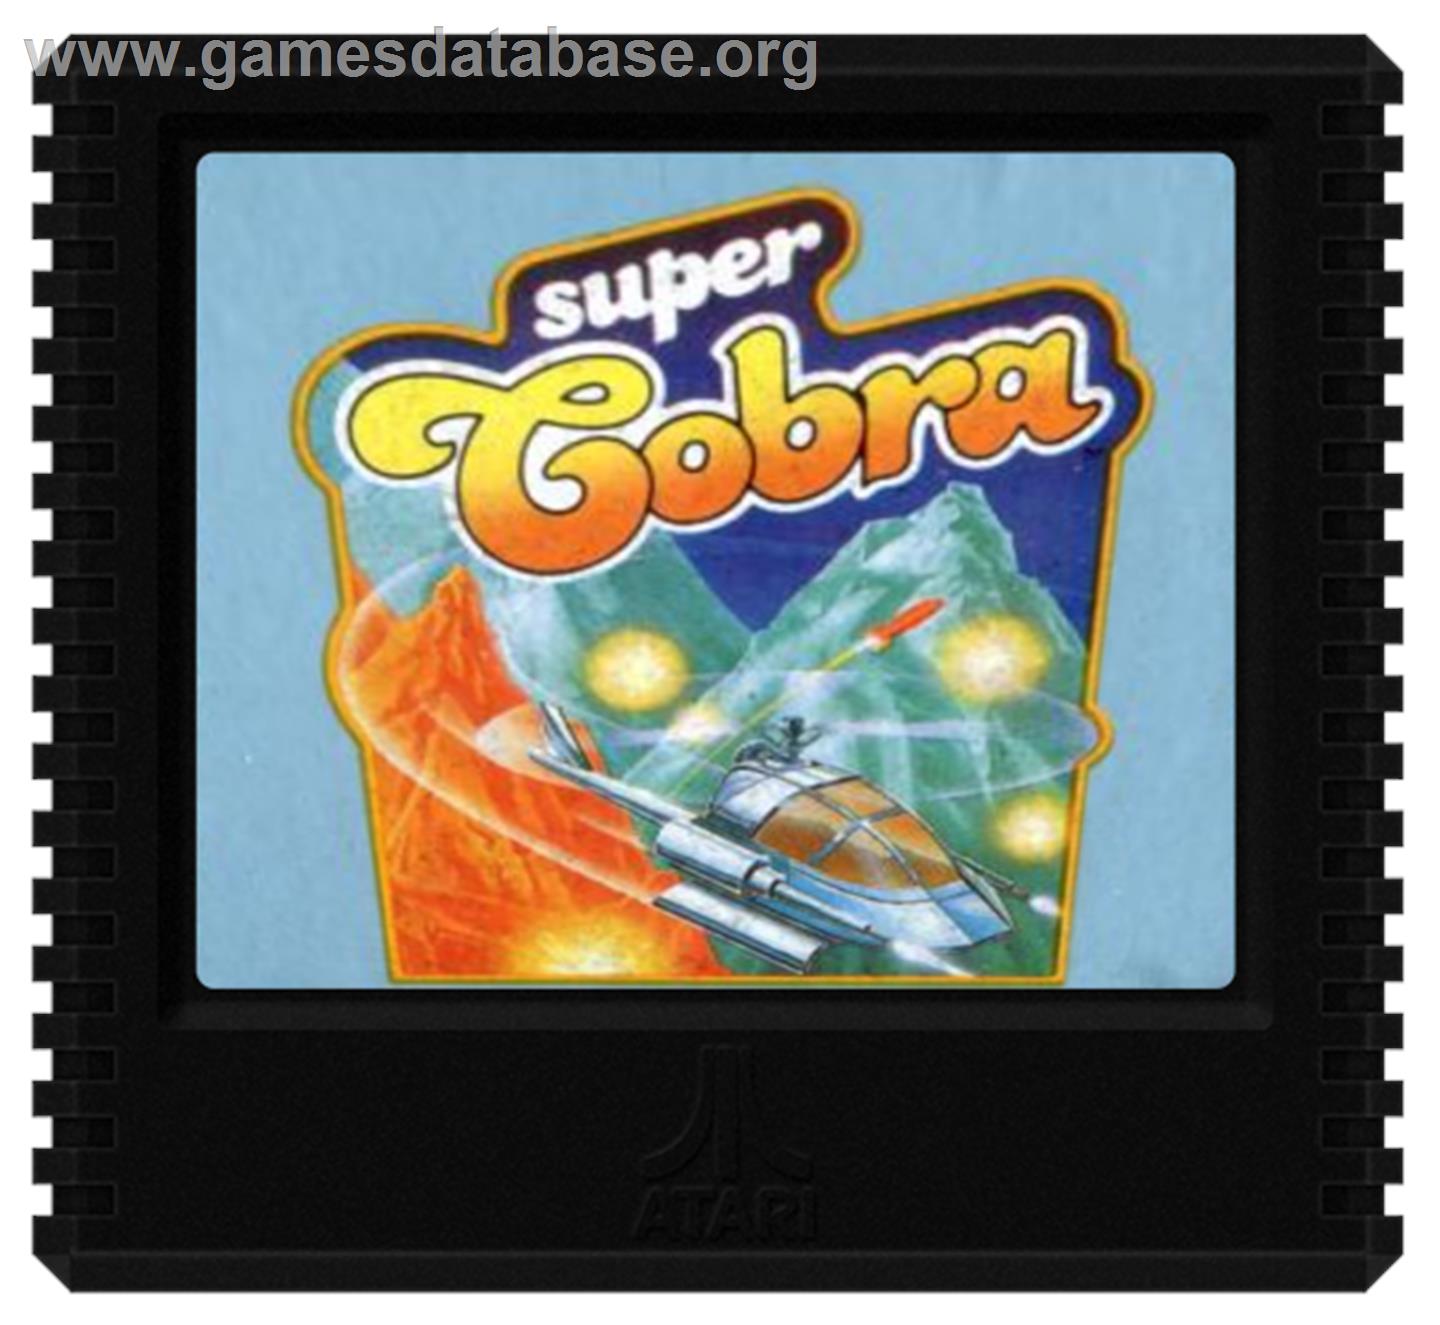 Super Cobra - Atari 5200 - Artwork - Cartridge